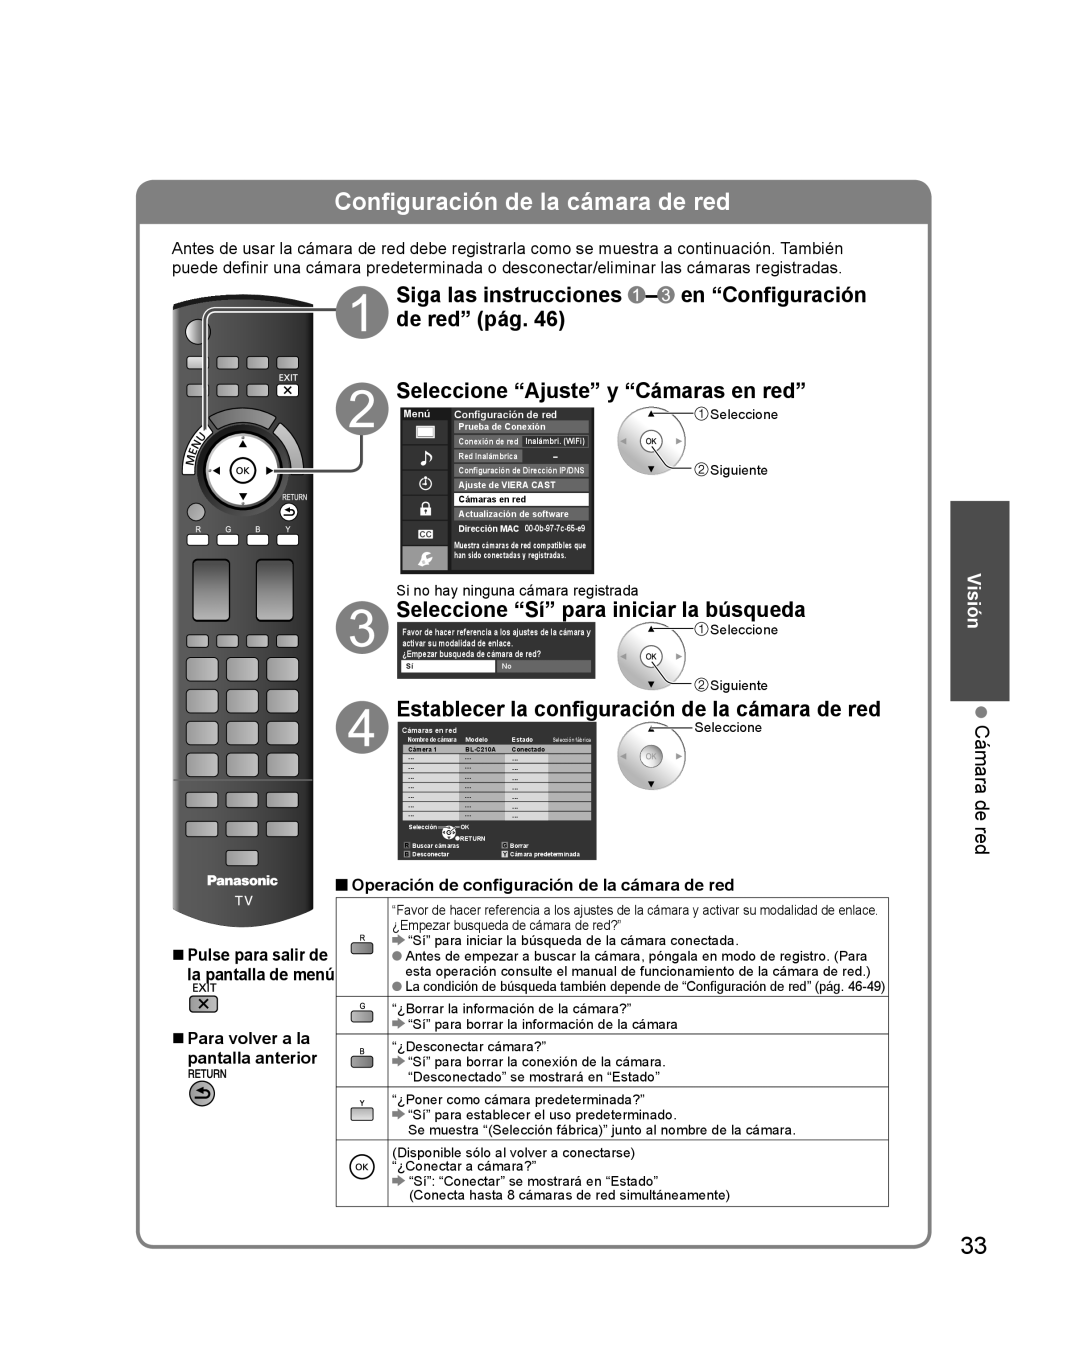 Panasonic TQB2AA0579 Configuración de la cámara de red, Siga las instrucciones - en “Configuración de red” pág, Visión 